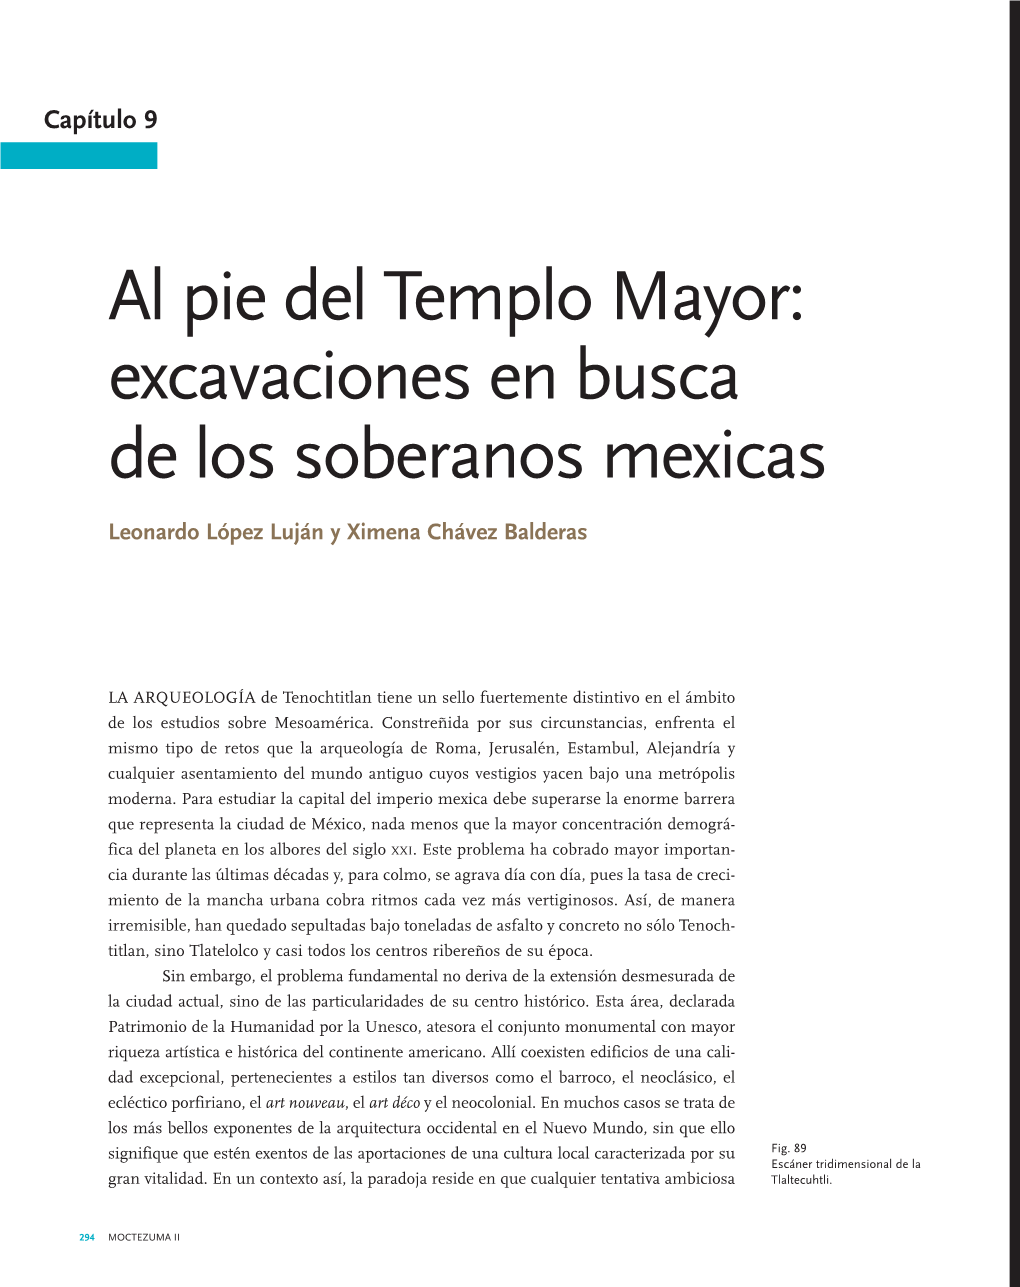 Al Pie Del Templo Mayor: Excavaciones En Busca De Los Soberanos Mexicas